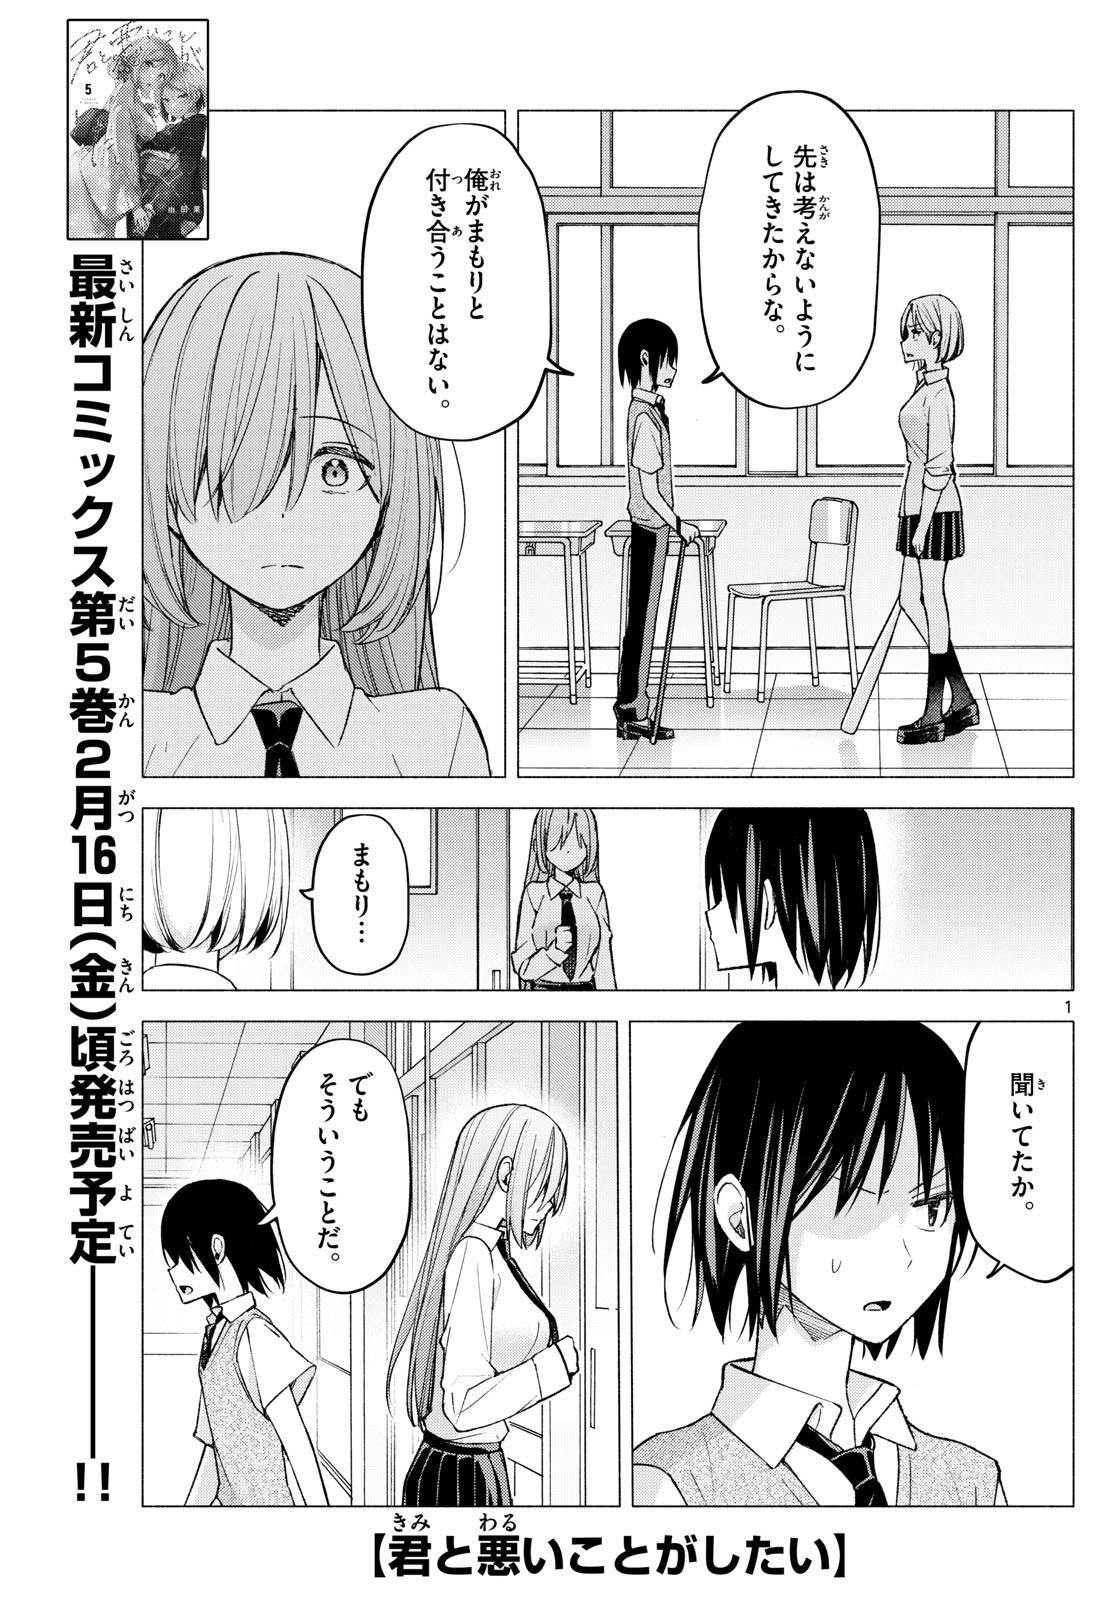 Kimi to Warui Koto ga Shitai - Chapter 061 - Page 1